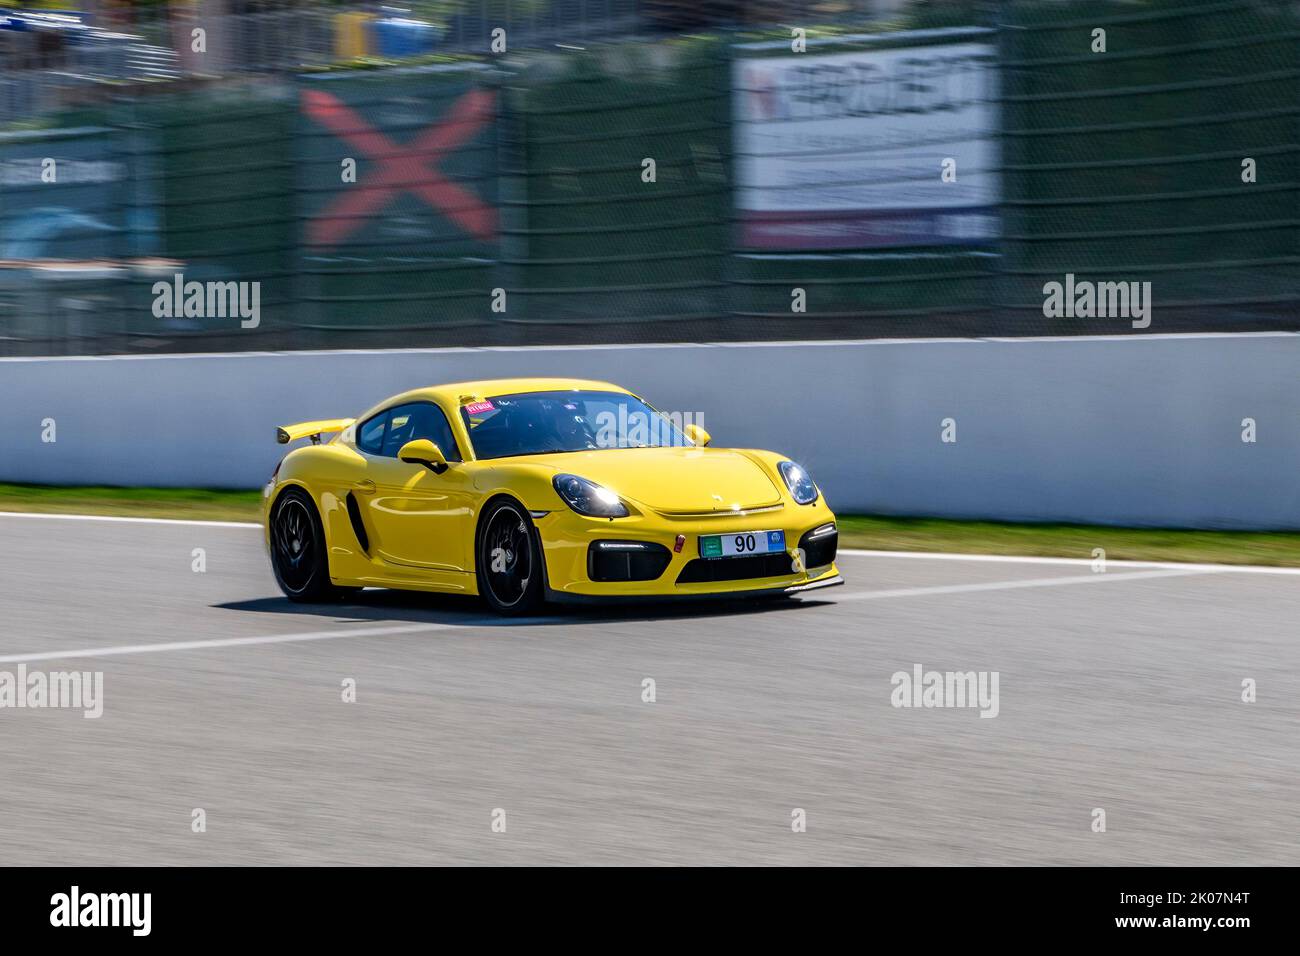 Gelber Rennwagen-Sportwagen Porsche Cayman GT4 fährt während des Trackday mit Höchstgeschwindigkeit auf der Start-Ziel-Geraden der Rennstrecke FIA Formula 1 Stockfoto